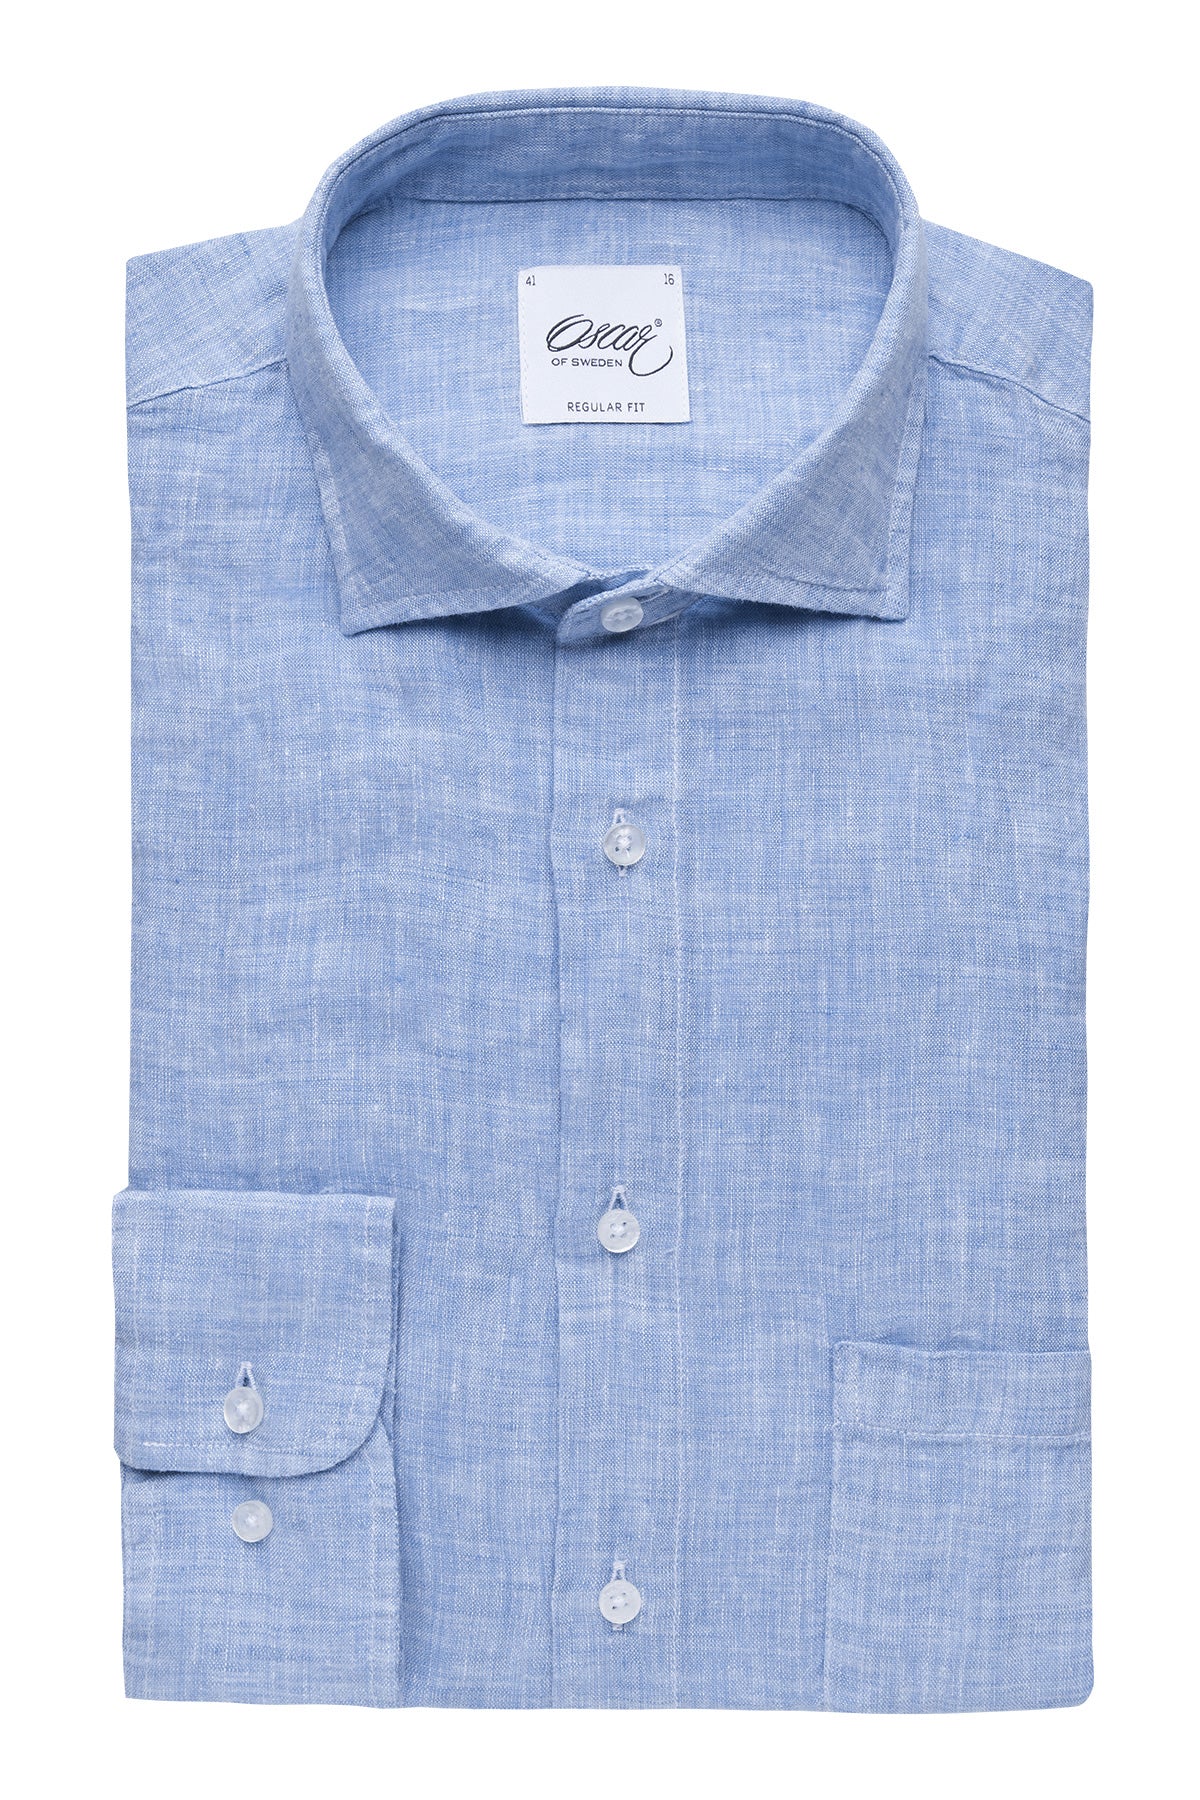 Light blue regular fit linen shirt